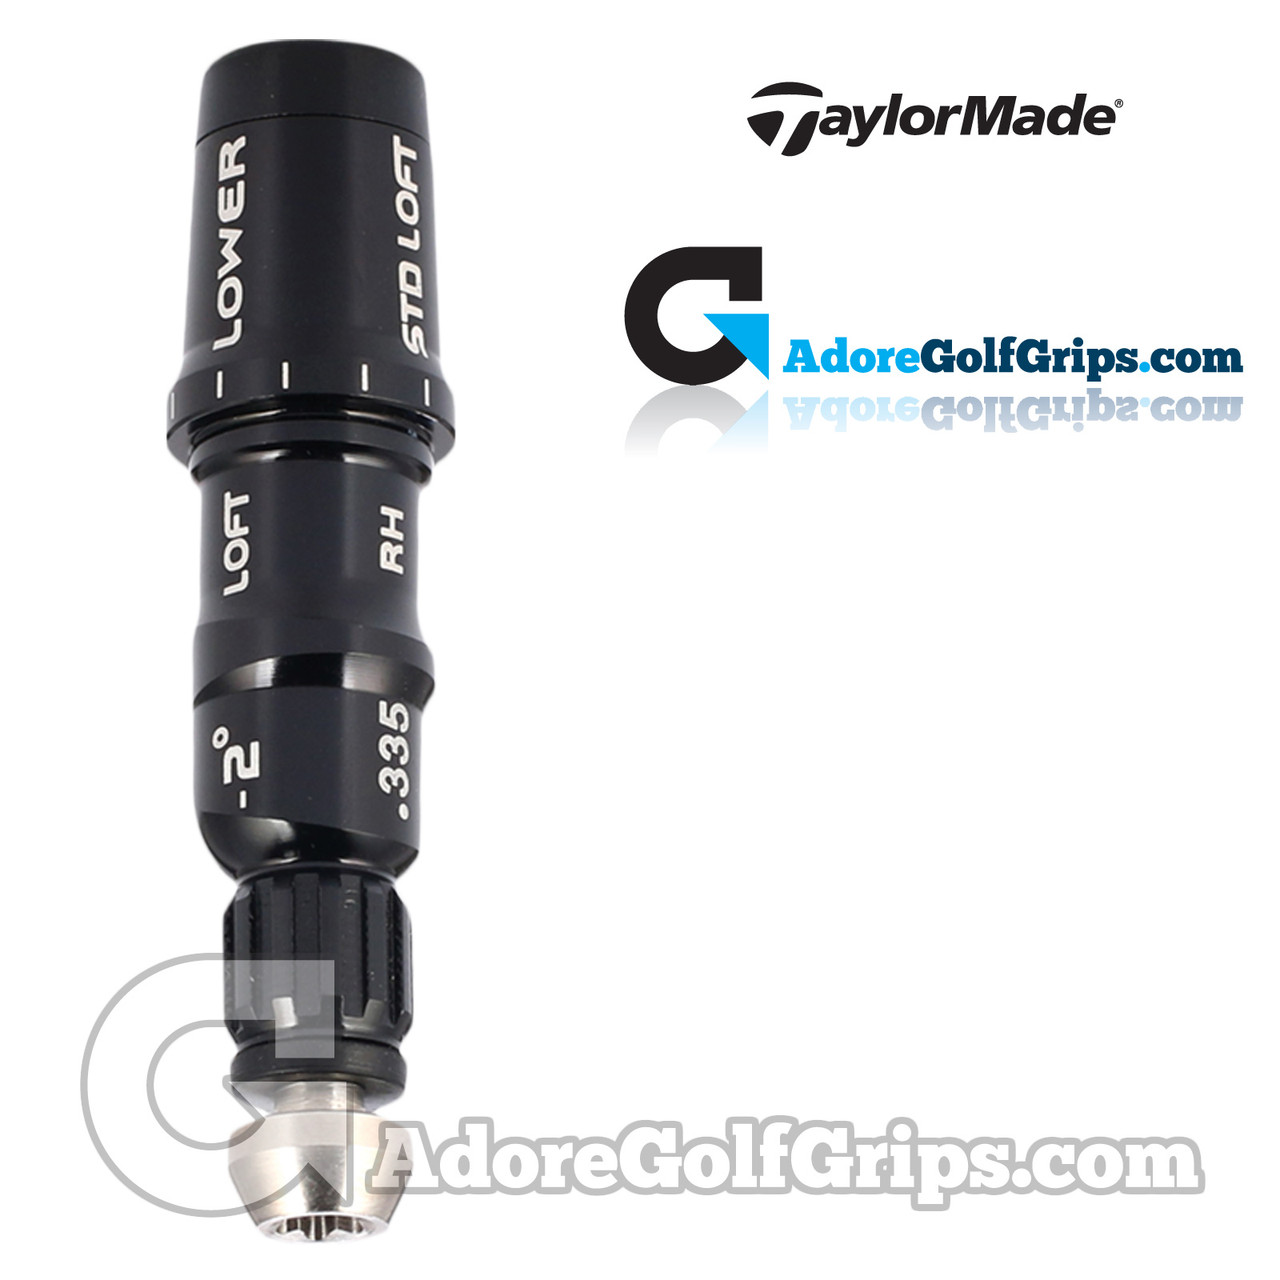 Vis d'adaptation pour Taylormade Golf M1 M2 M3 M4 M5 SIM, 4 pièces, manchon  d'adaptation, accessoires de Golf - Type Black #A